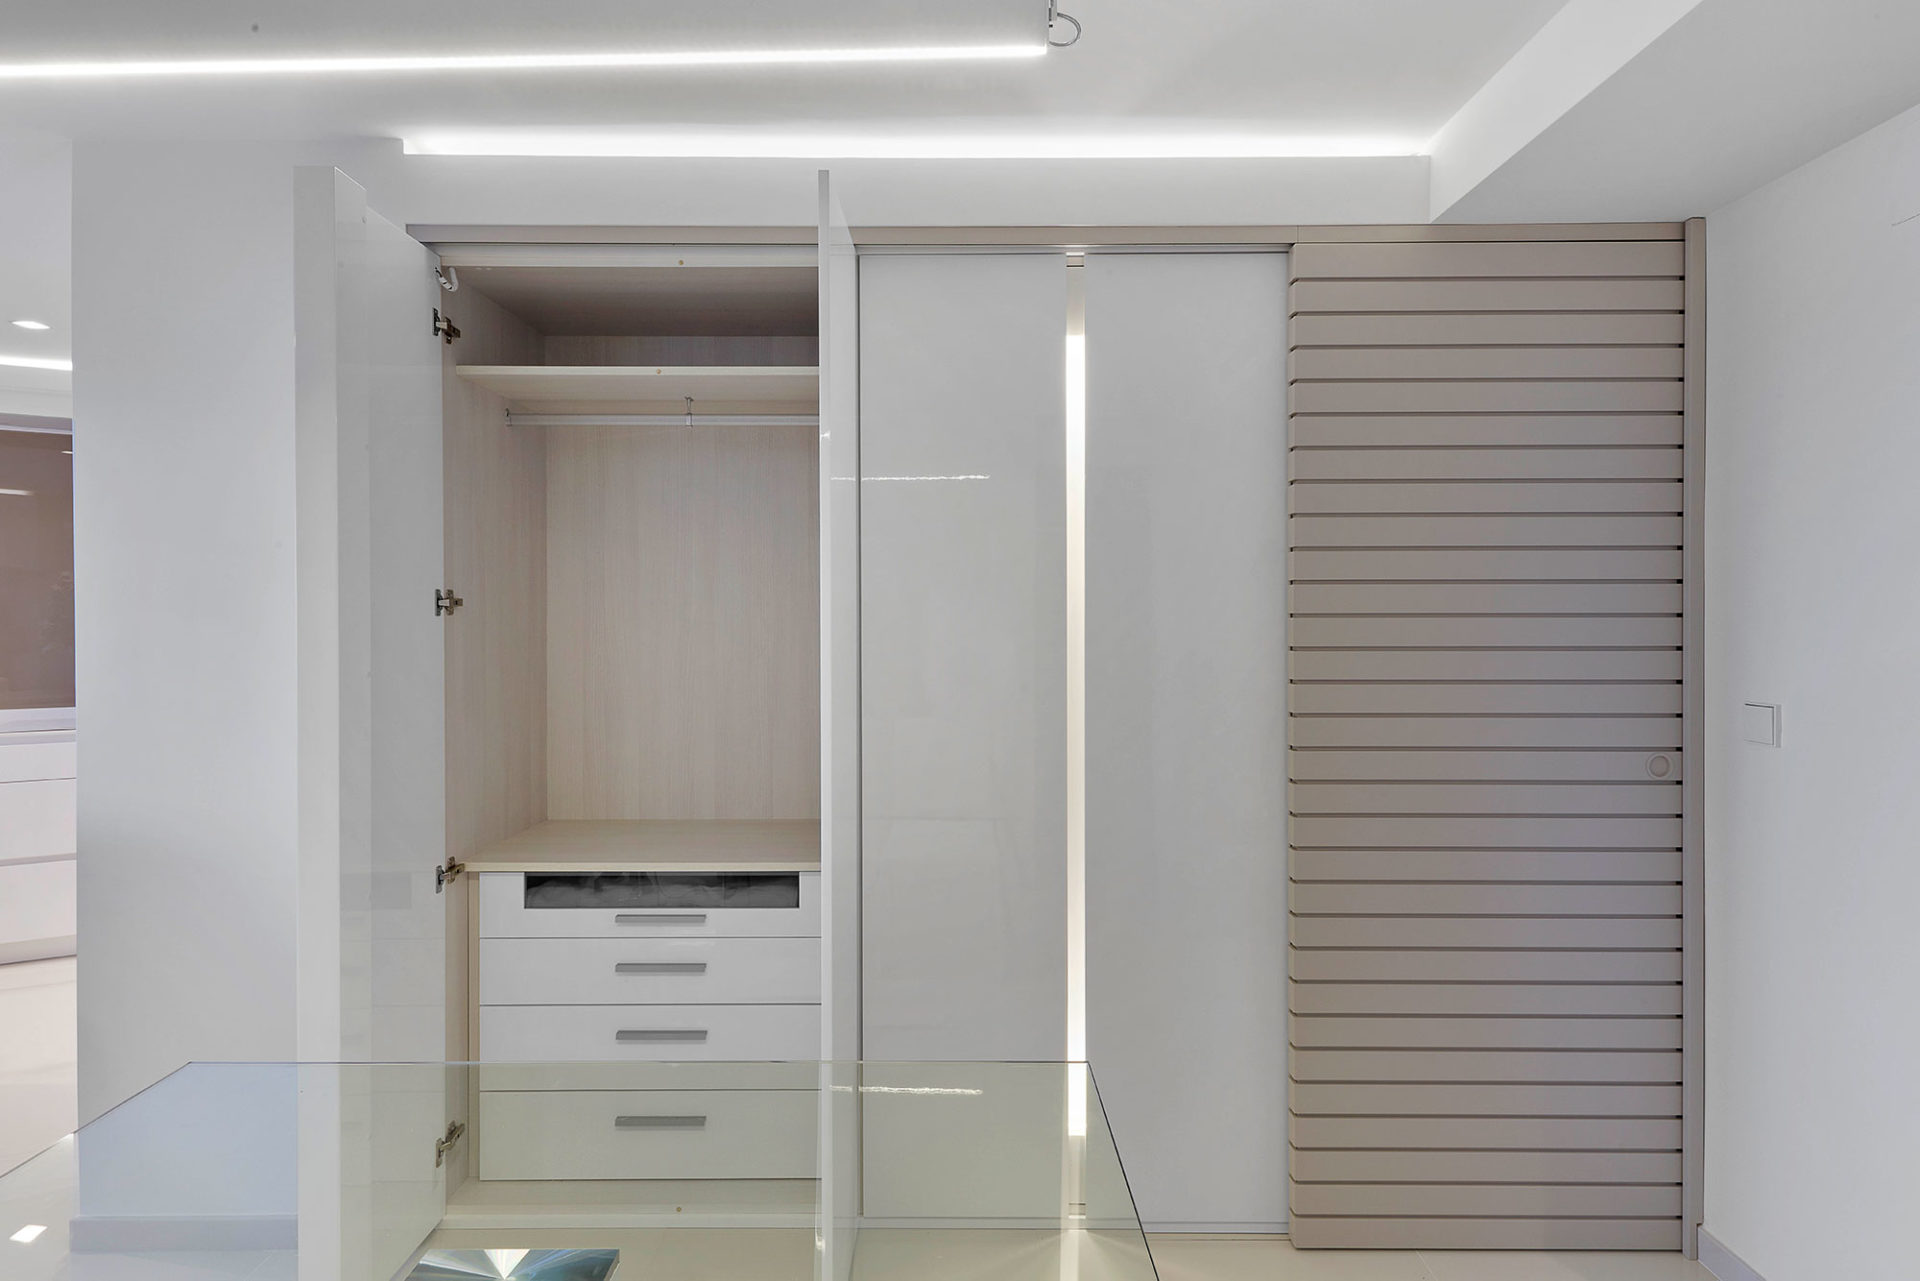 interiorismo apartamentos pequeños estilo mediterraneo armario oculto en panelado diseño y fabricación a medida